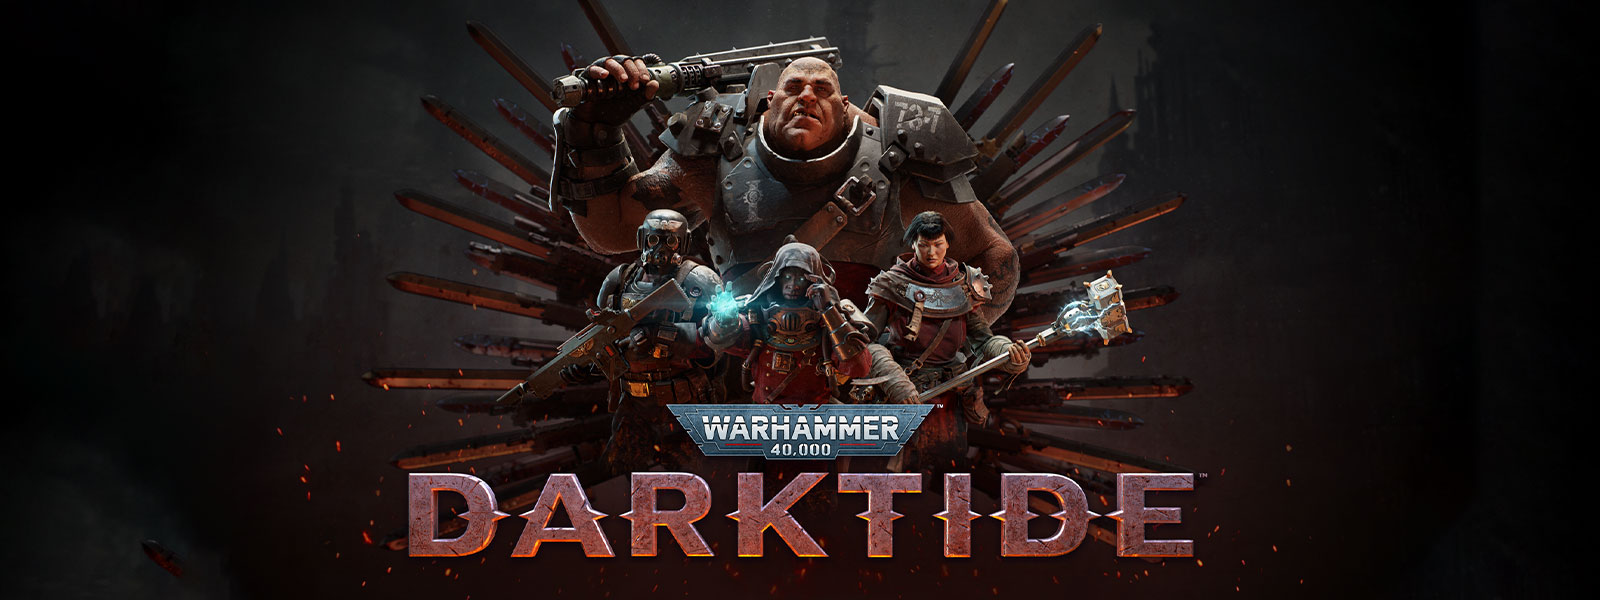 Warhammer 40,000: Darktide, Páncélos karakterek csoportja pengemintázat előtt pózol.